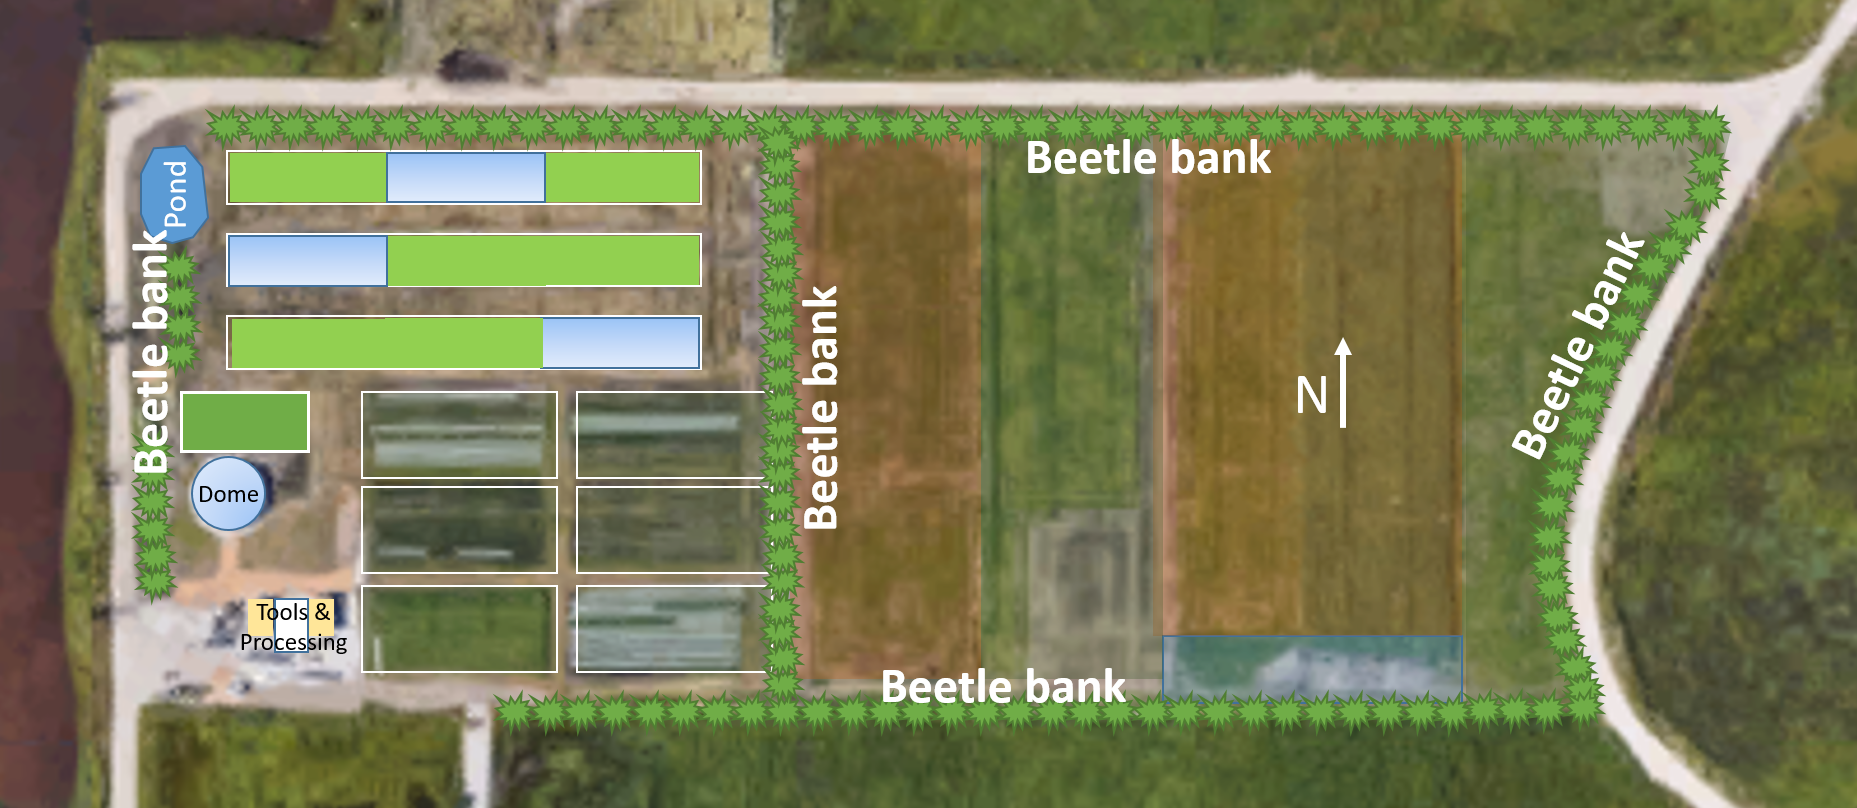 Beetle bank map